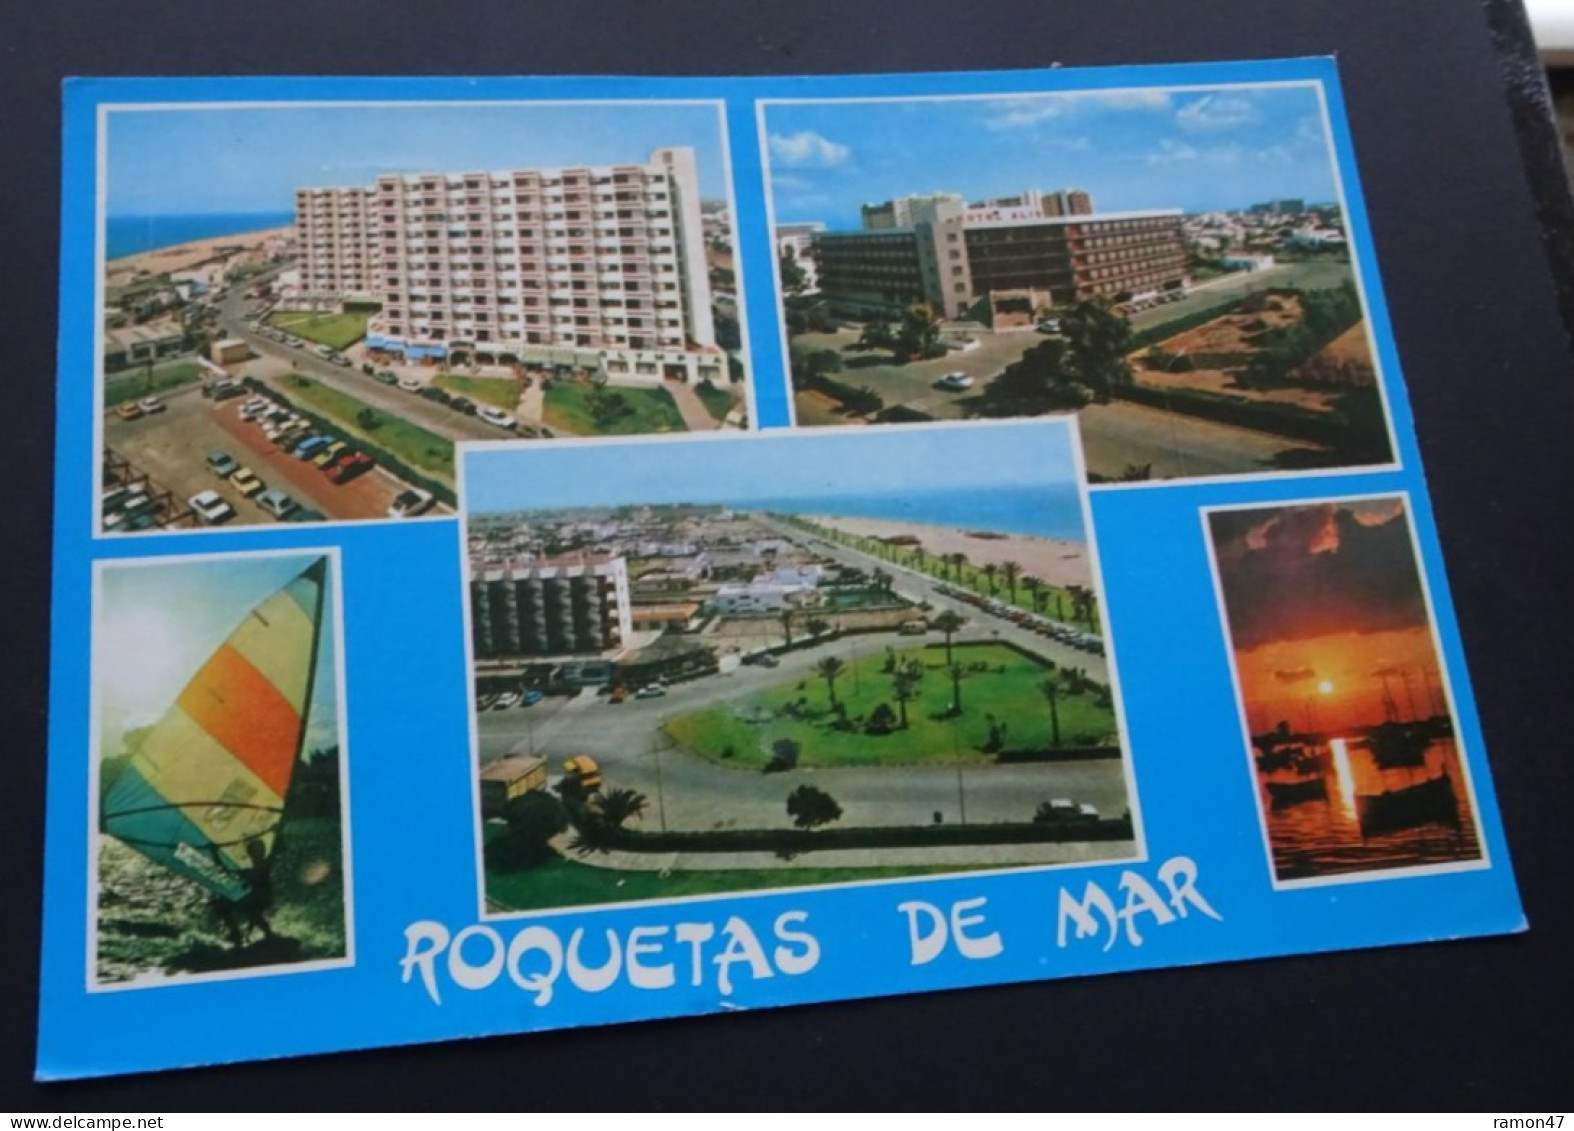 Roquetas De Mar, Almeria - Distribucion Exclusiva Libro Almeria - # 30 - Almería